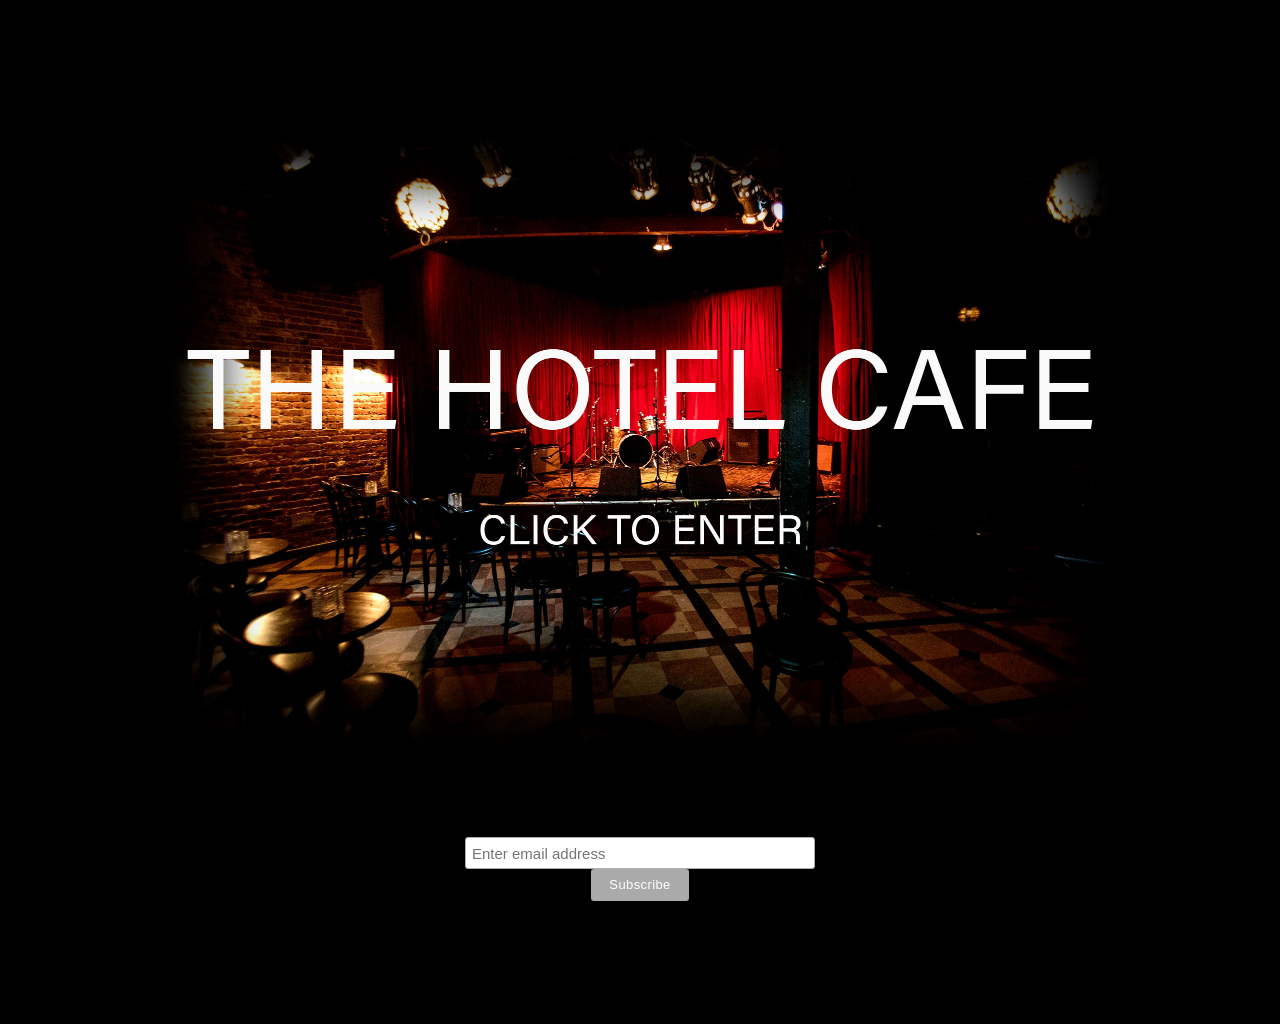 hotelcafe.com